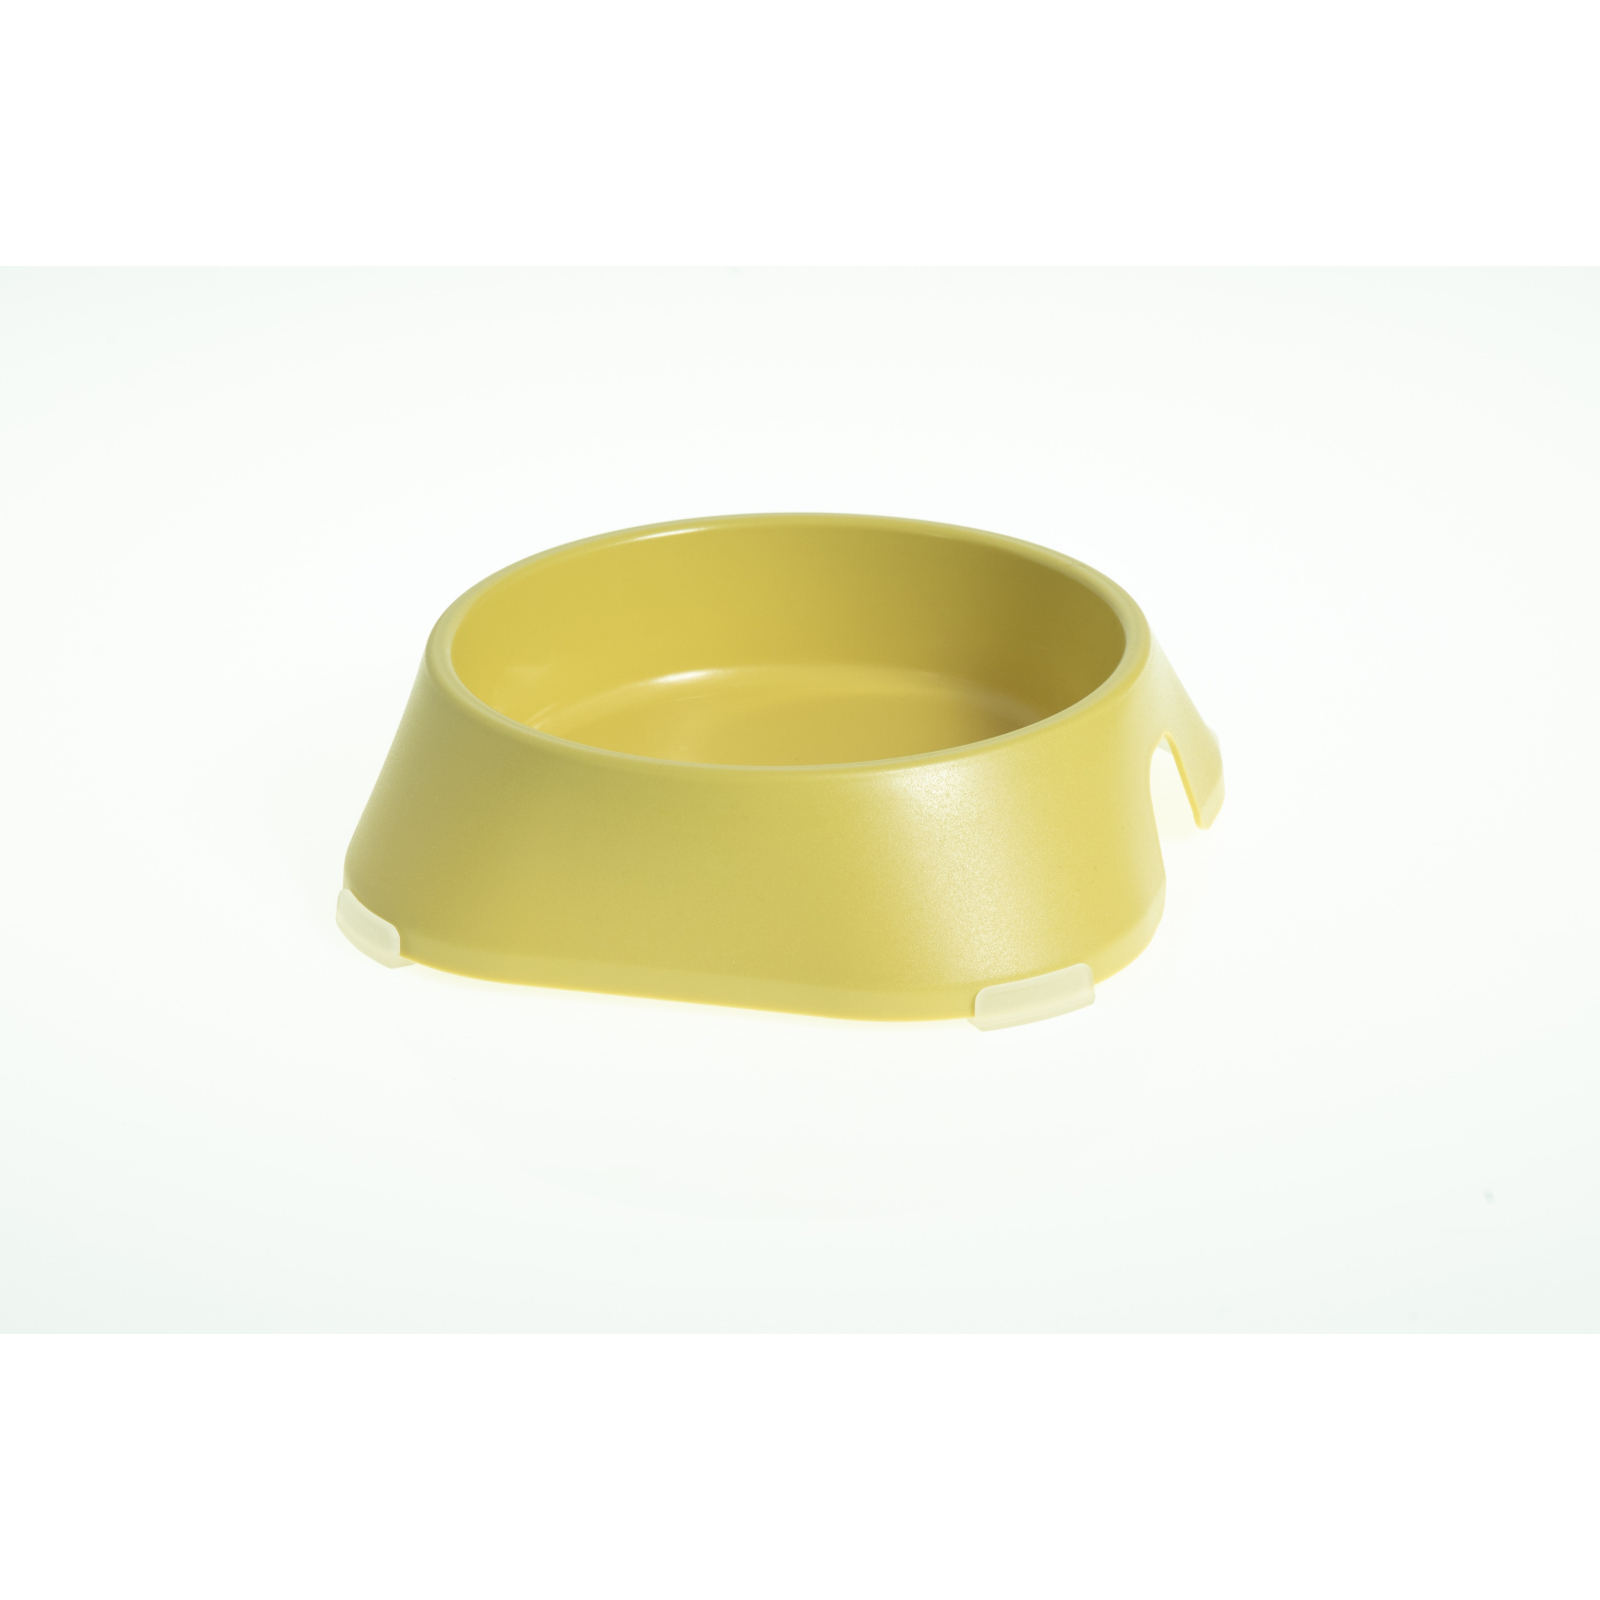 Посуда для кошек Fiboo Миска без антискользящих накладок S желтая (FIB0139)